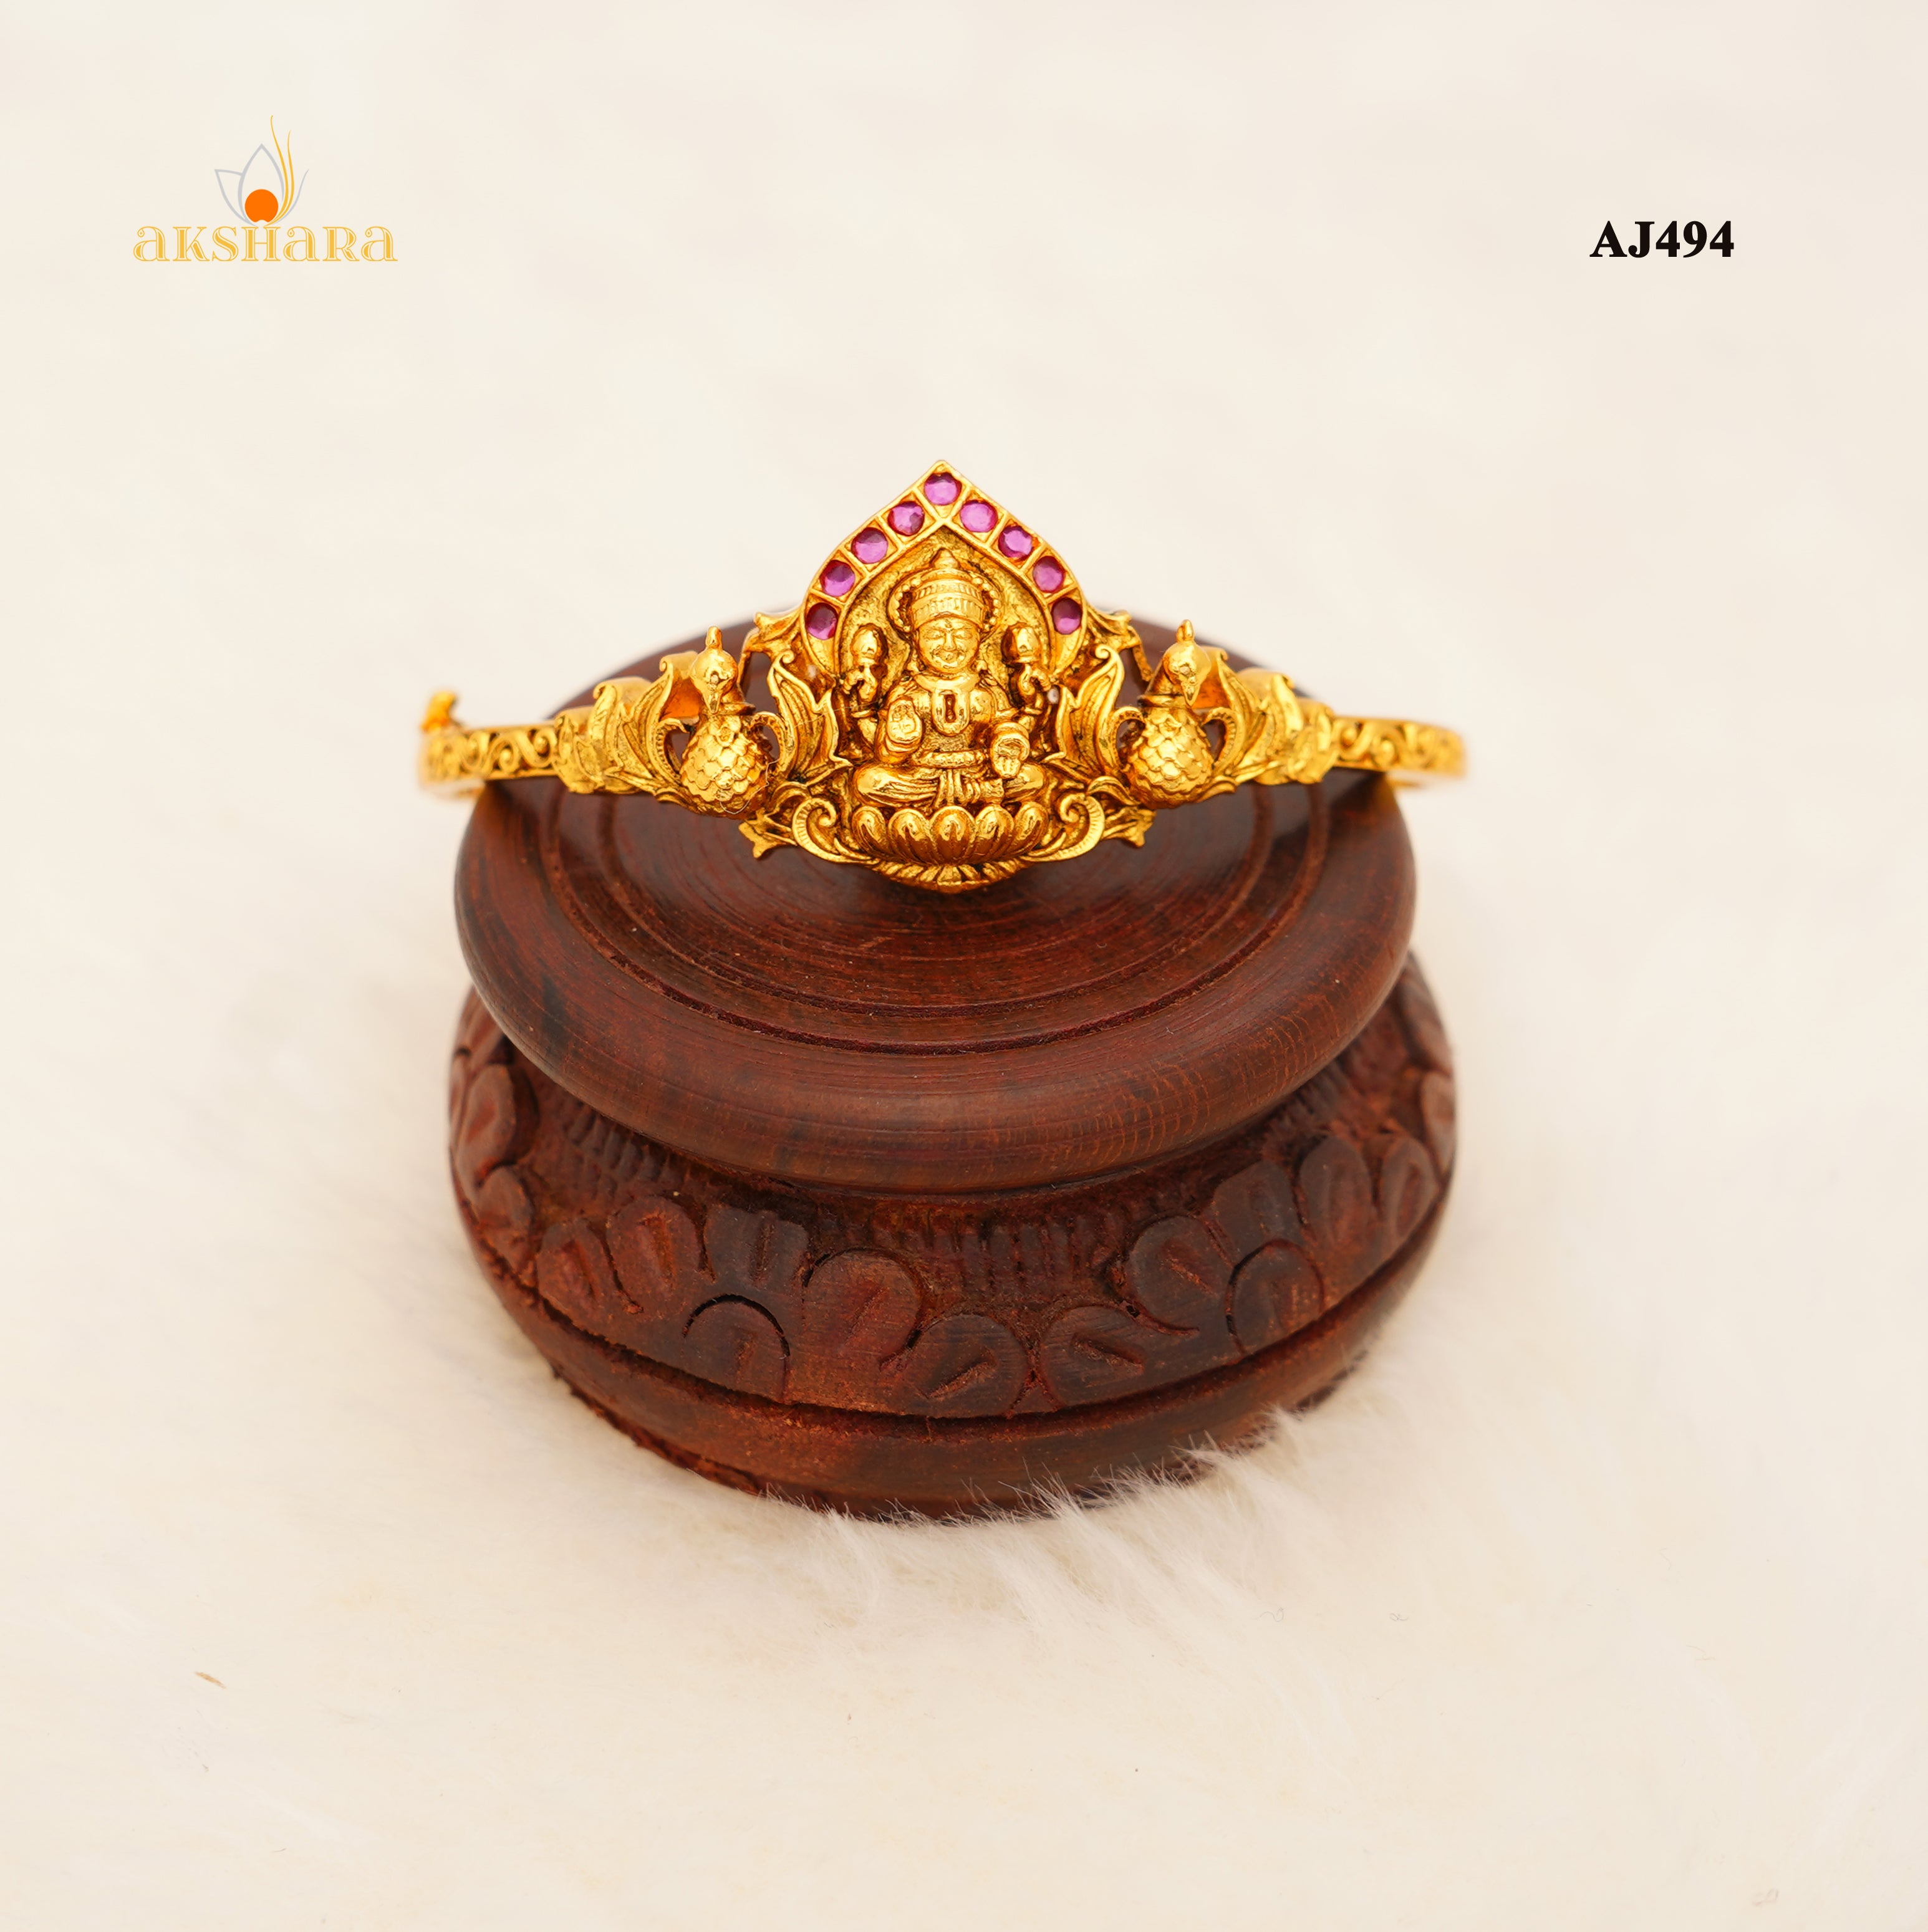 memoir Gold Plated Finger Ring Brass Gold Plated Ring Price in India - Buy  memoir Gold Plated Finger Ring Brass Gold Plated Ring Online at Best Prices  in India | Flipkart.com